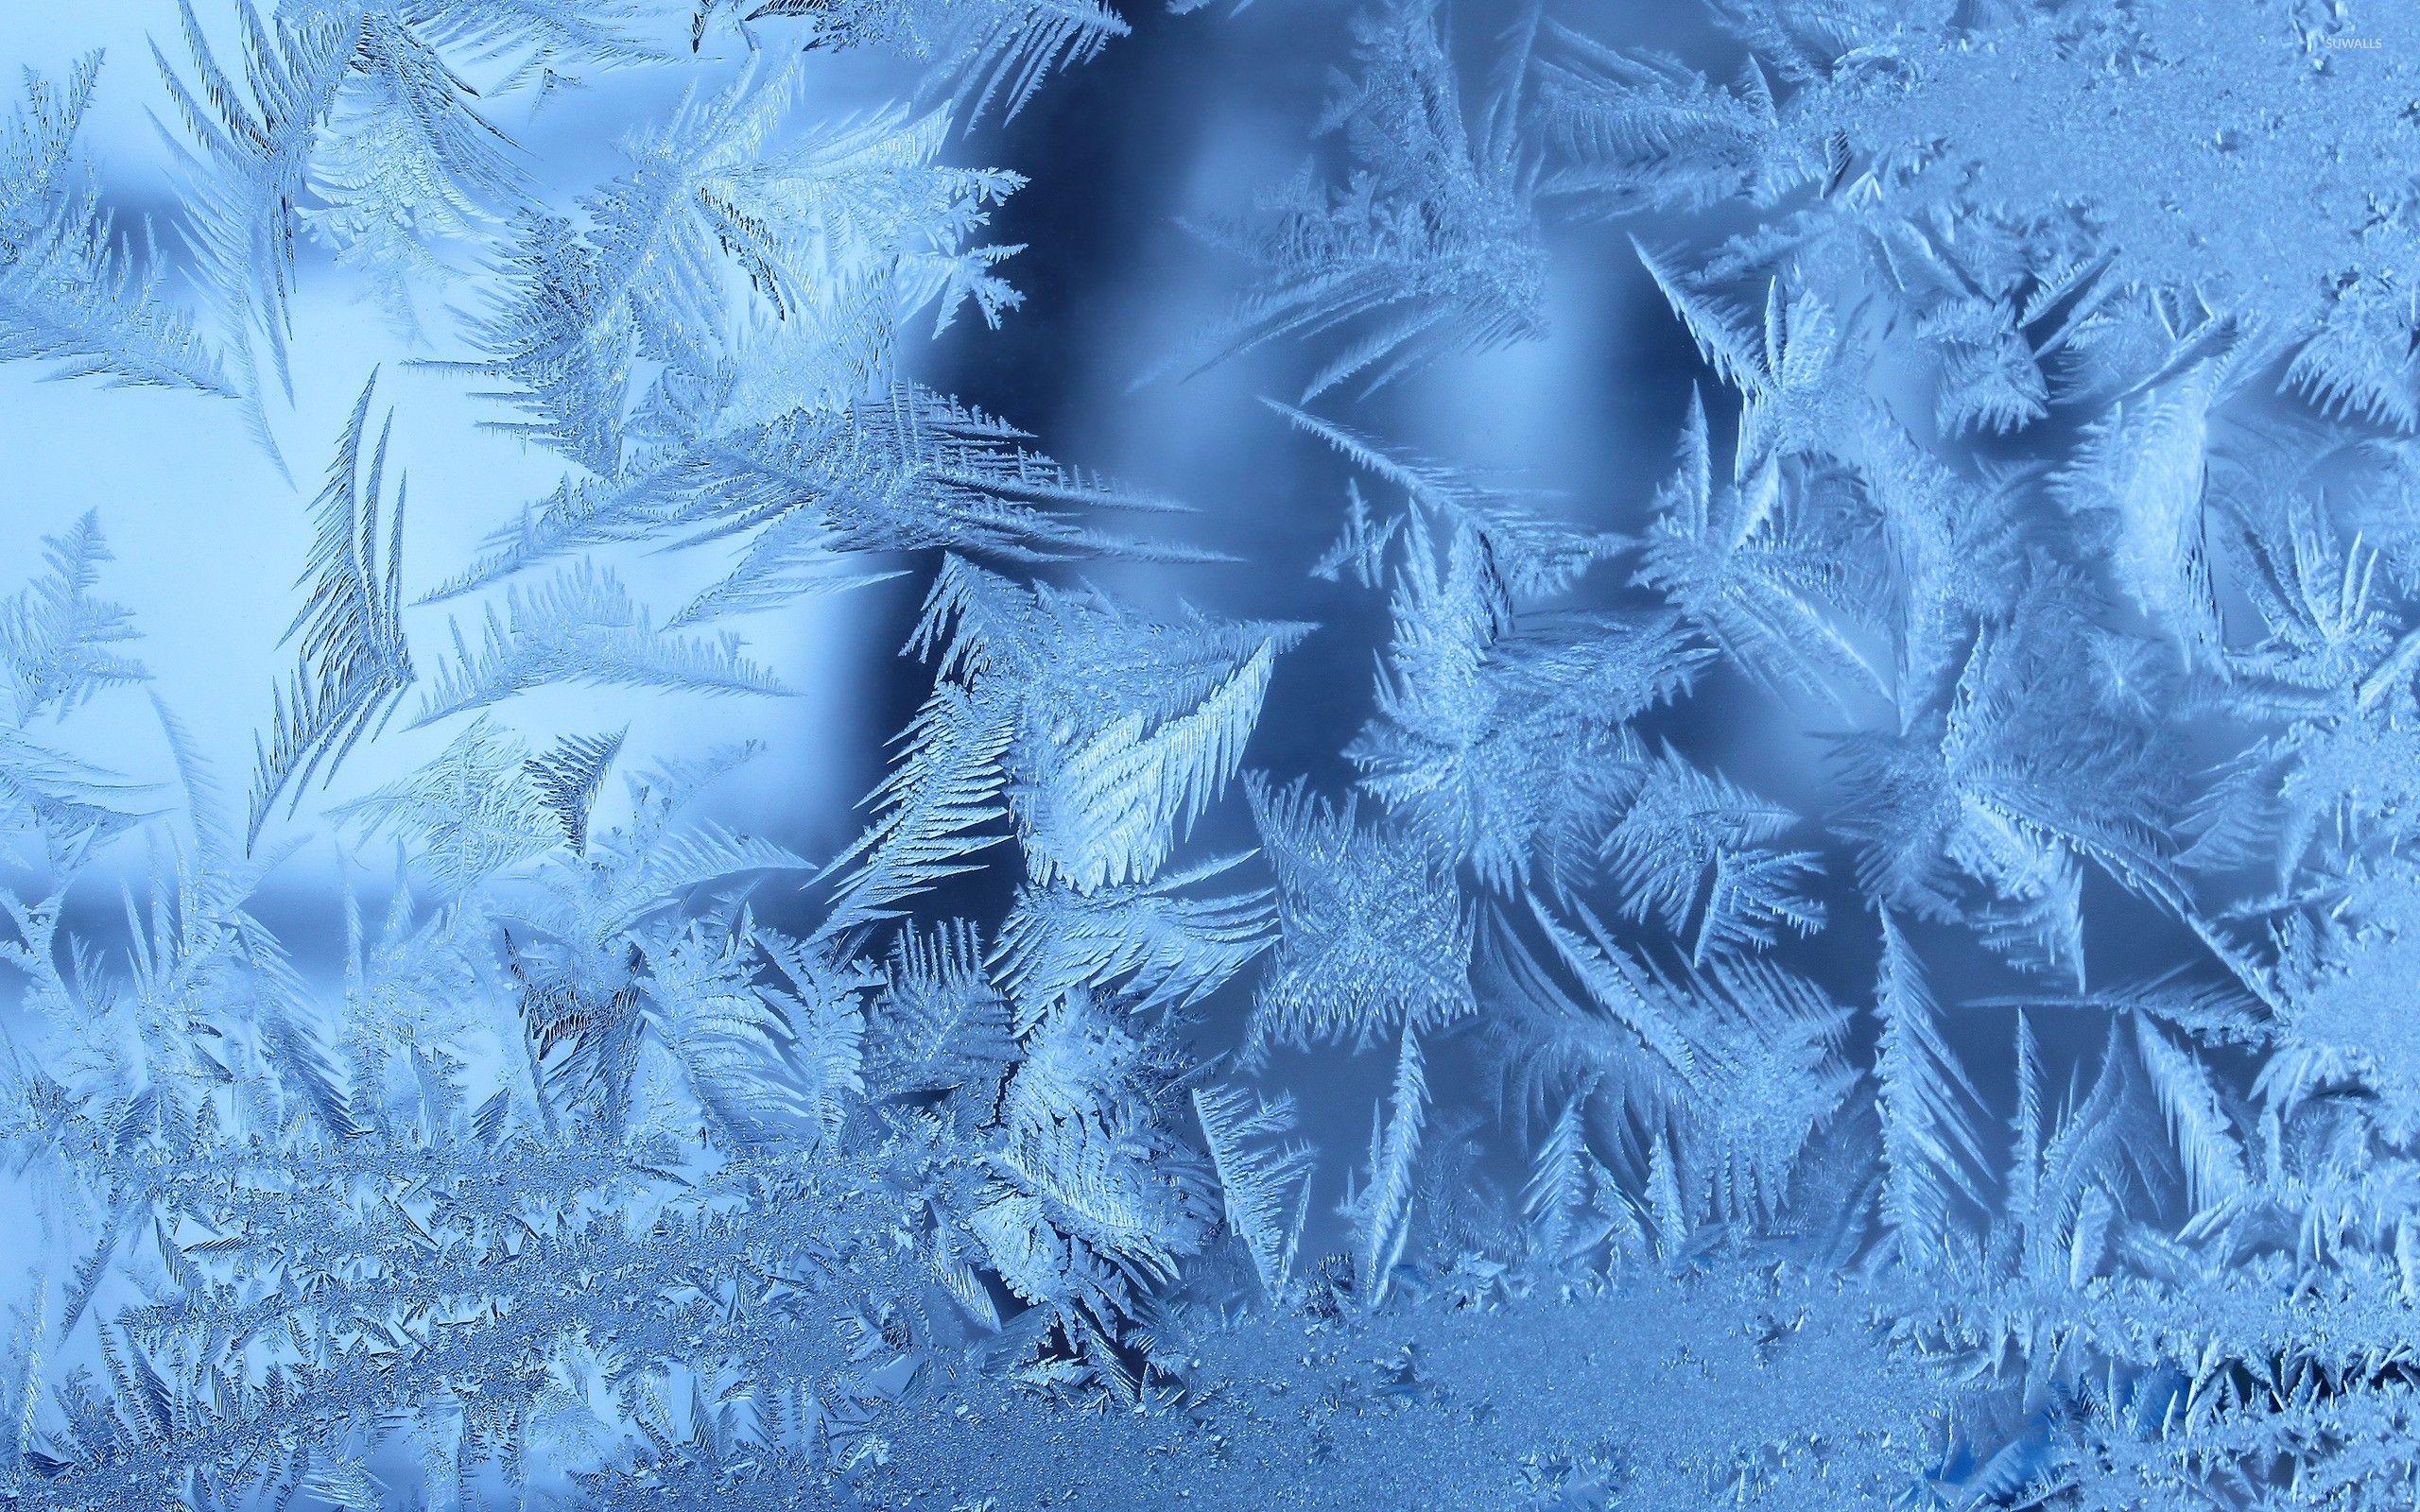 Winter Wallpaper Images - Free Download on Freepik